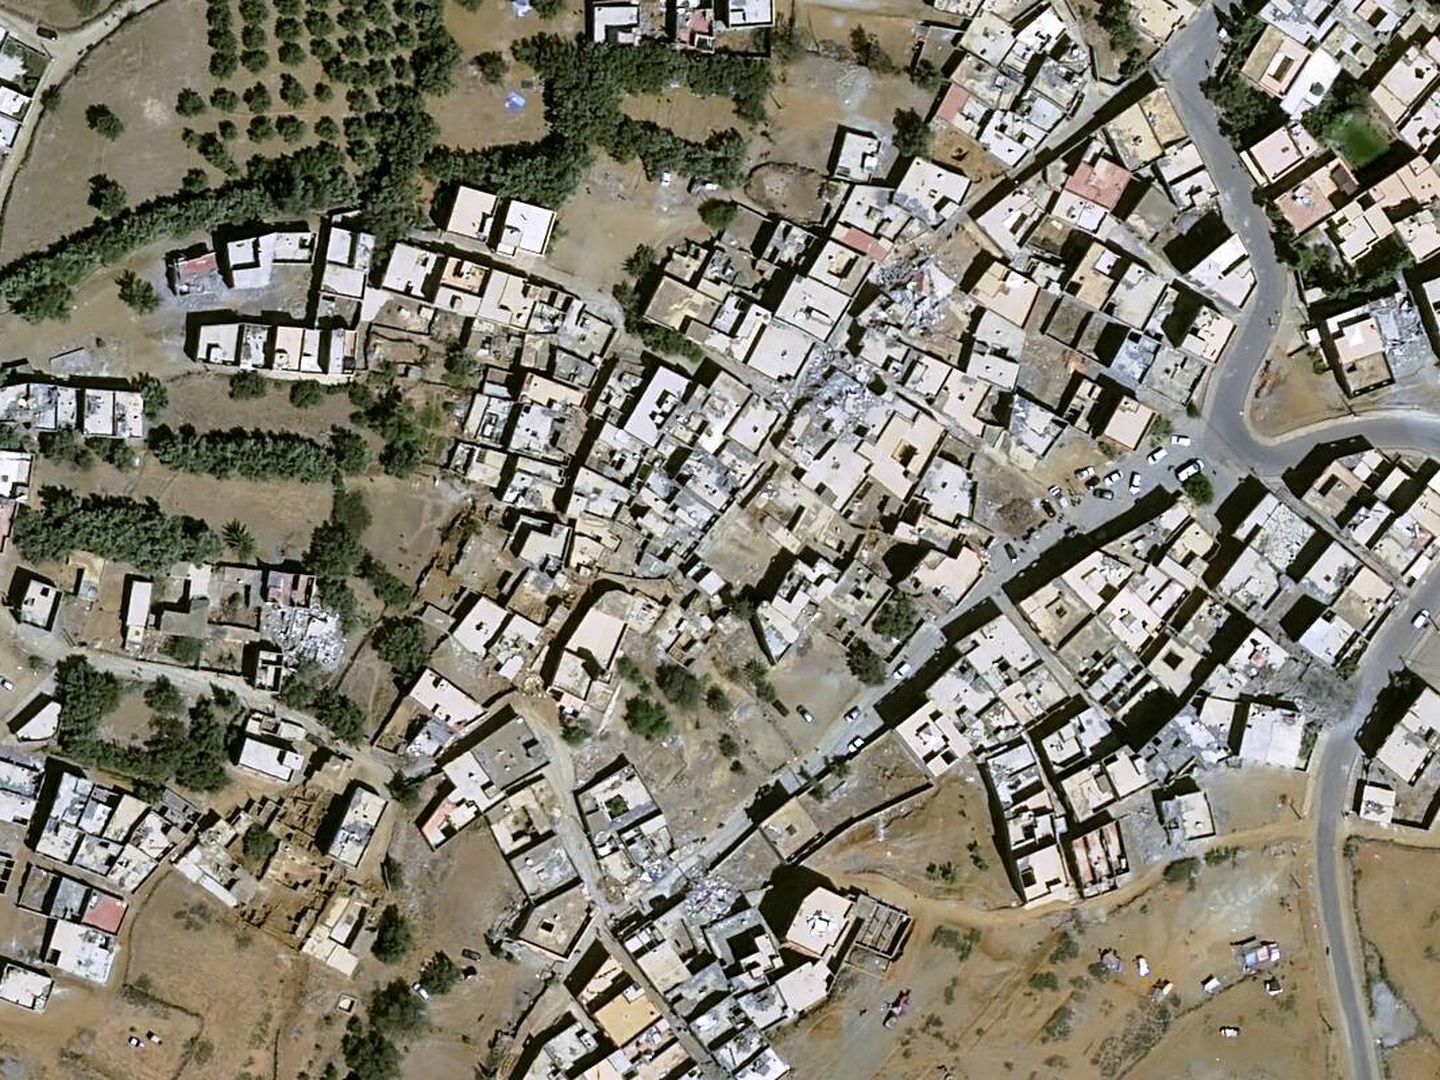 Los edificios del centro de Amizmiz son antiguos, y han sufrido grandes desperfectos por el terremoto (Pléiades Neo © Airbus DS, 2023)